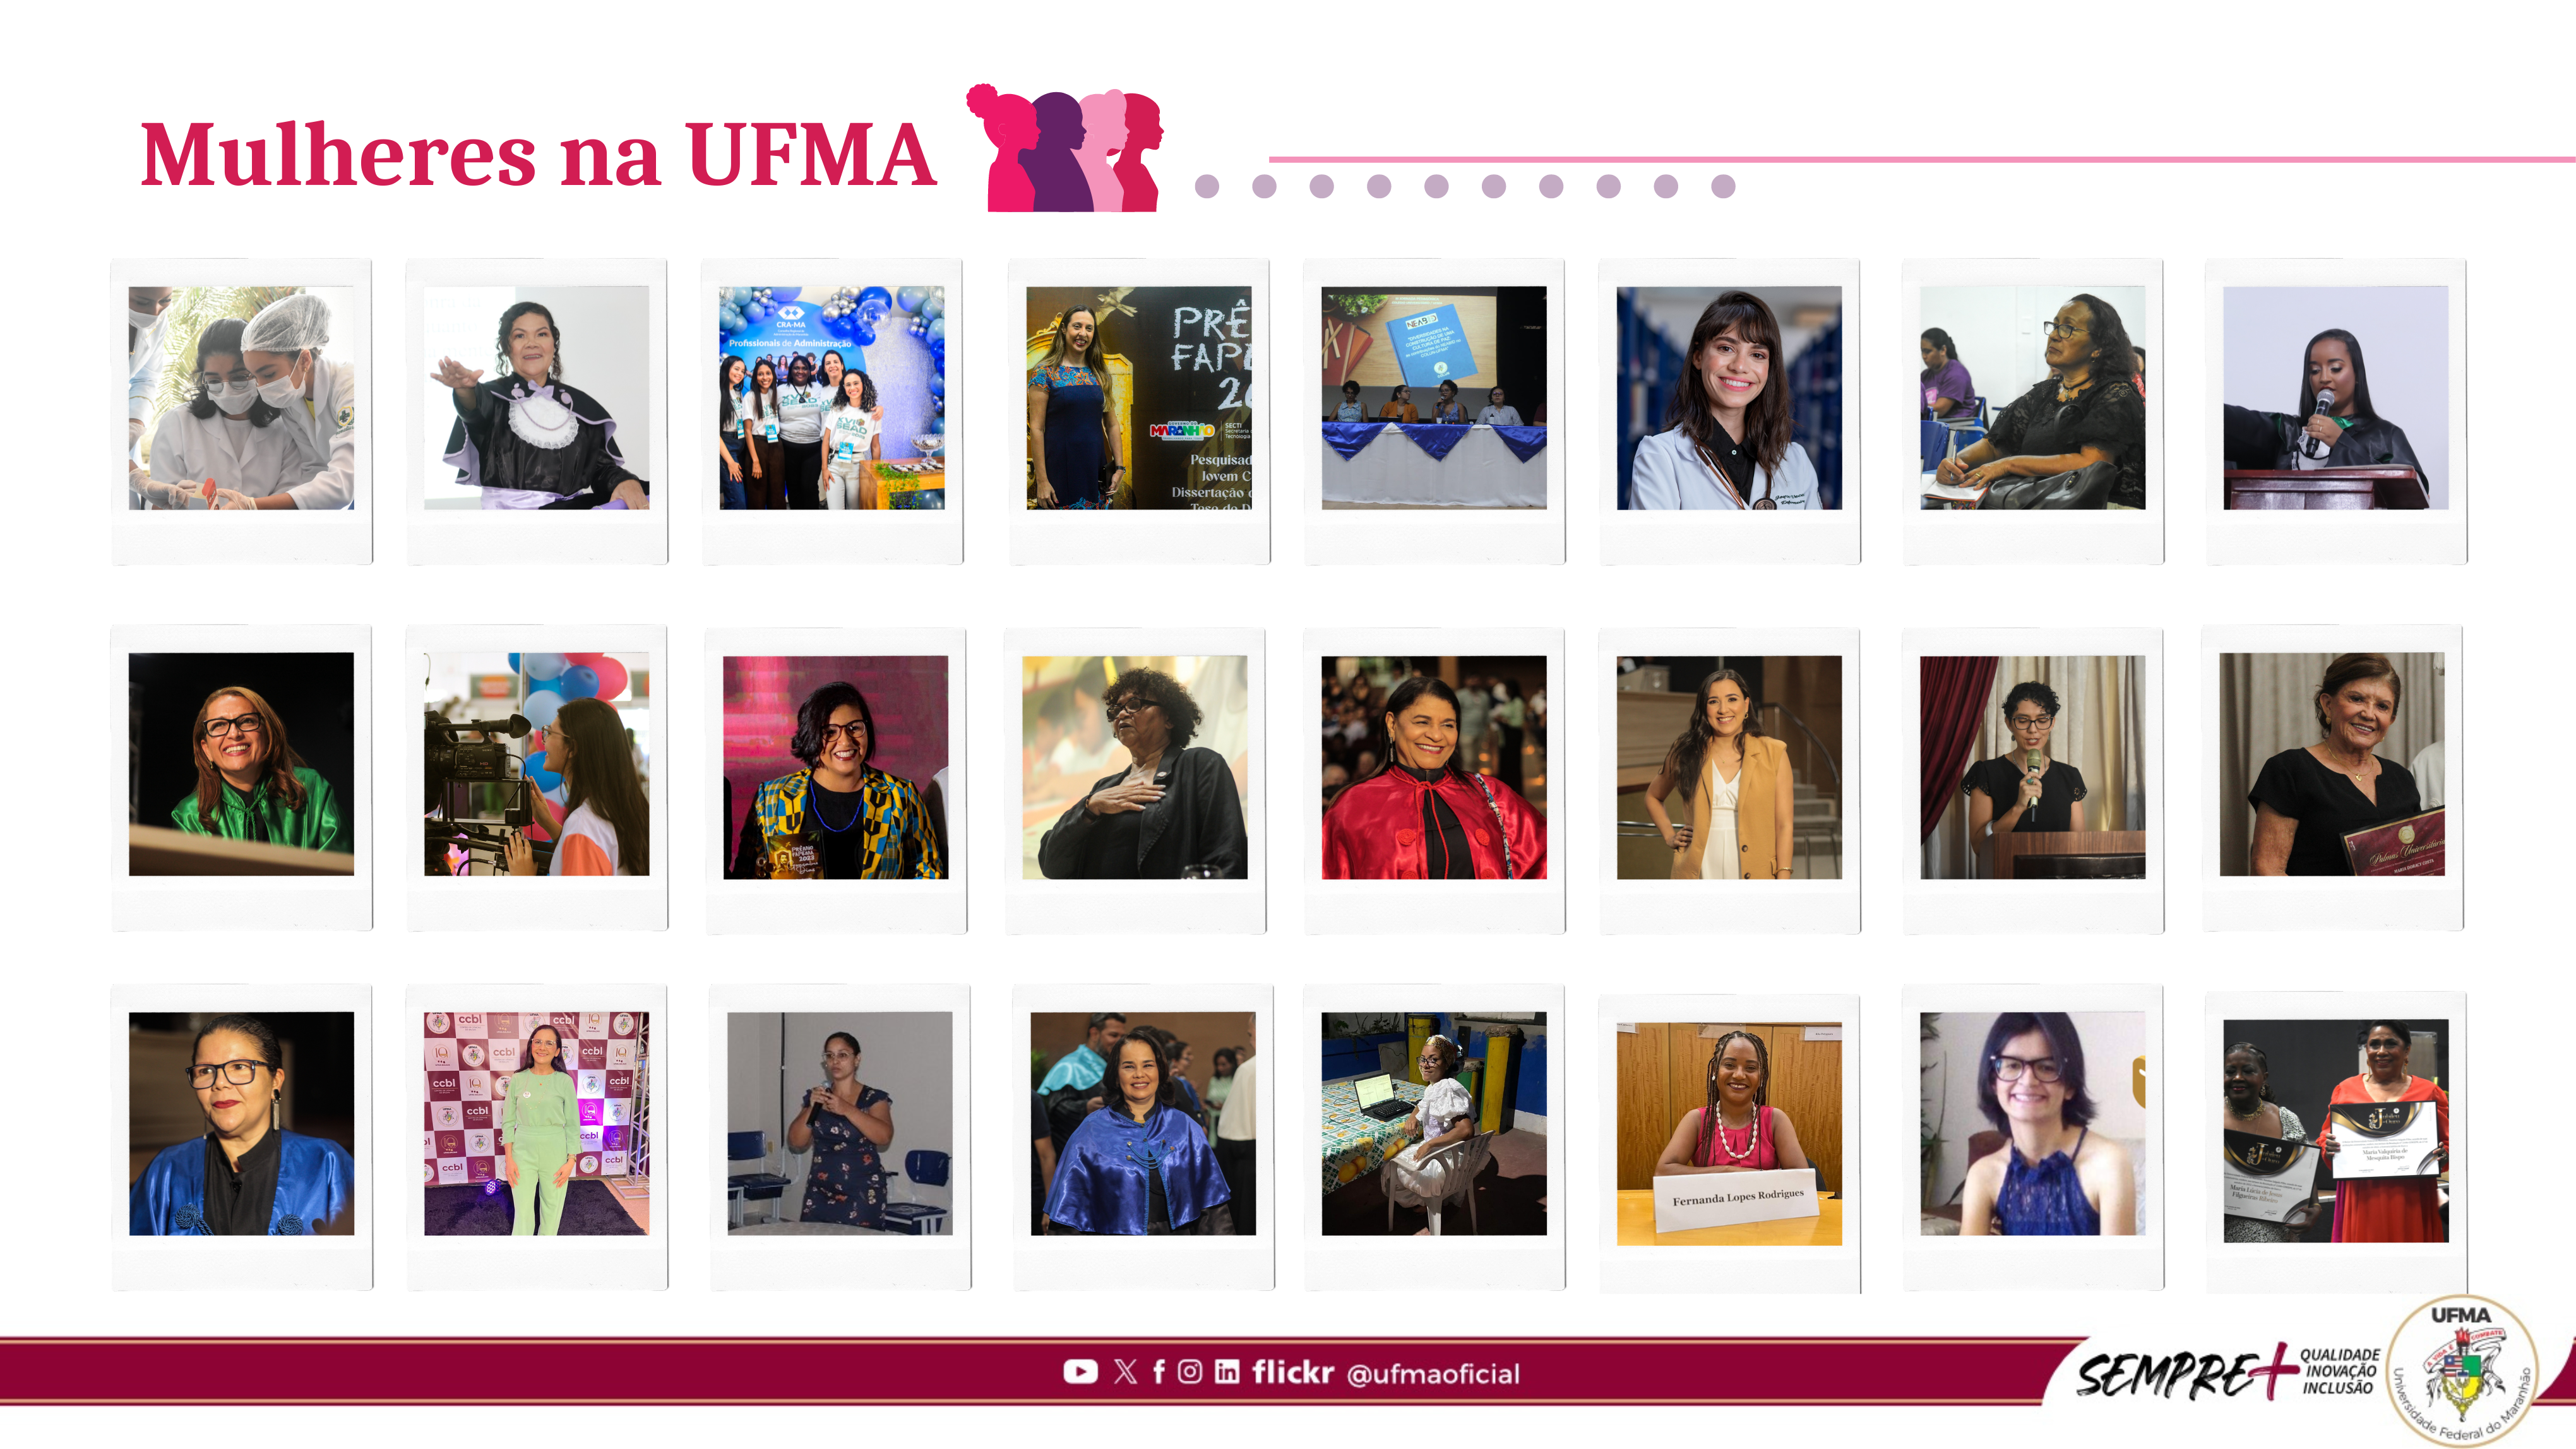 Mulheres na UFMA e a contribuição científica rumo à igualdade de gênero